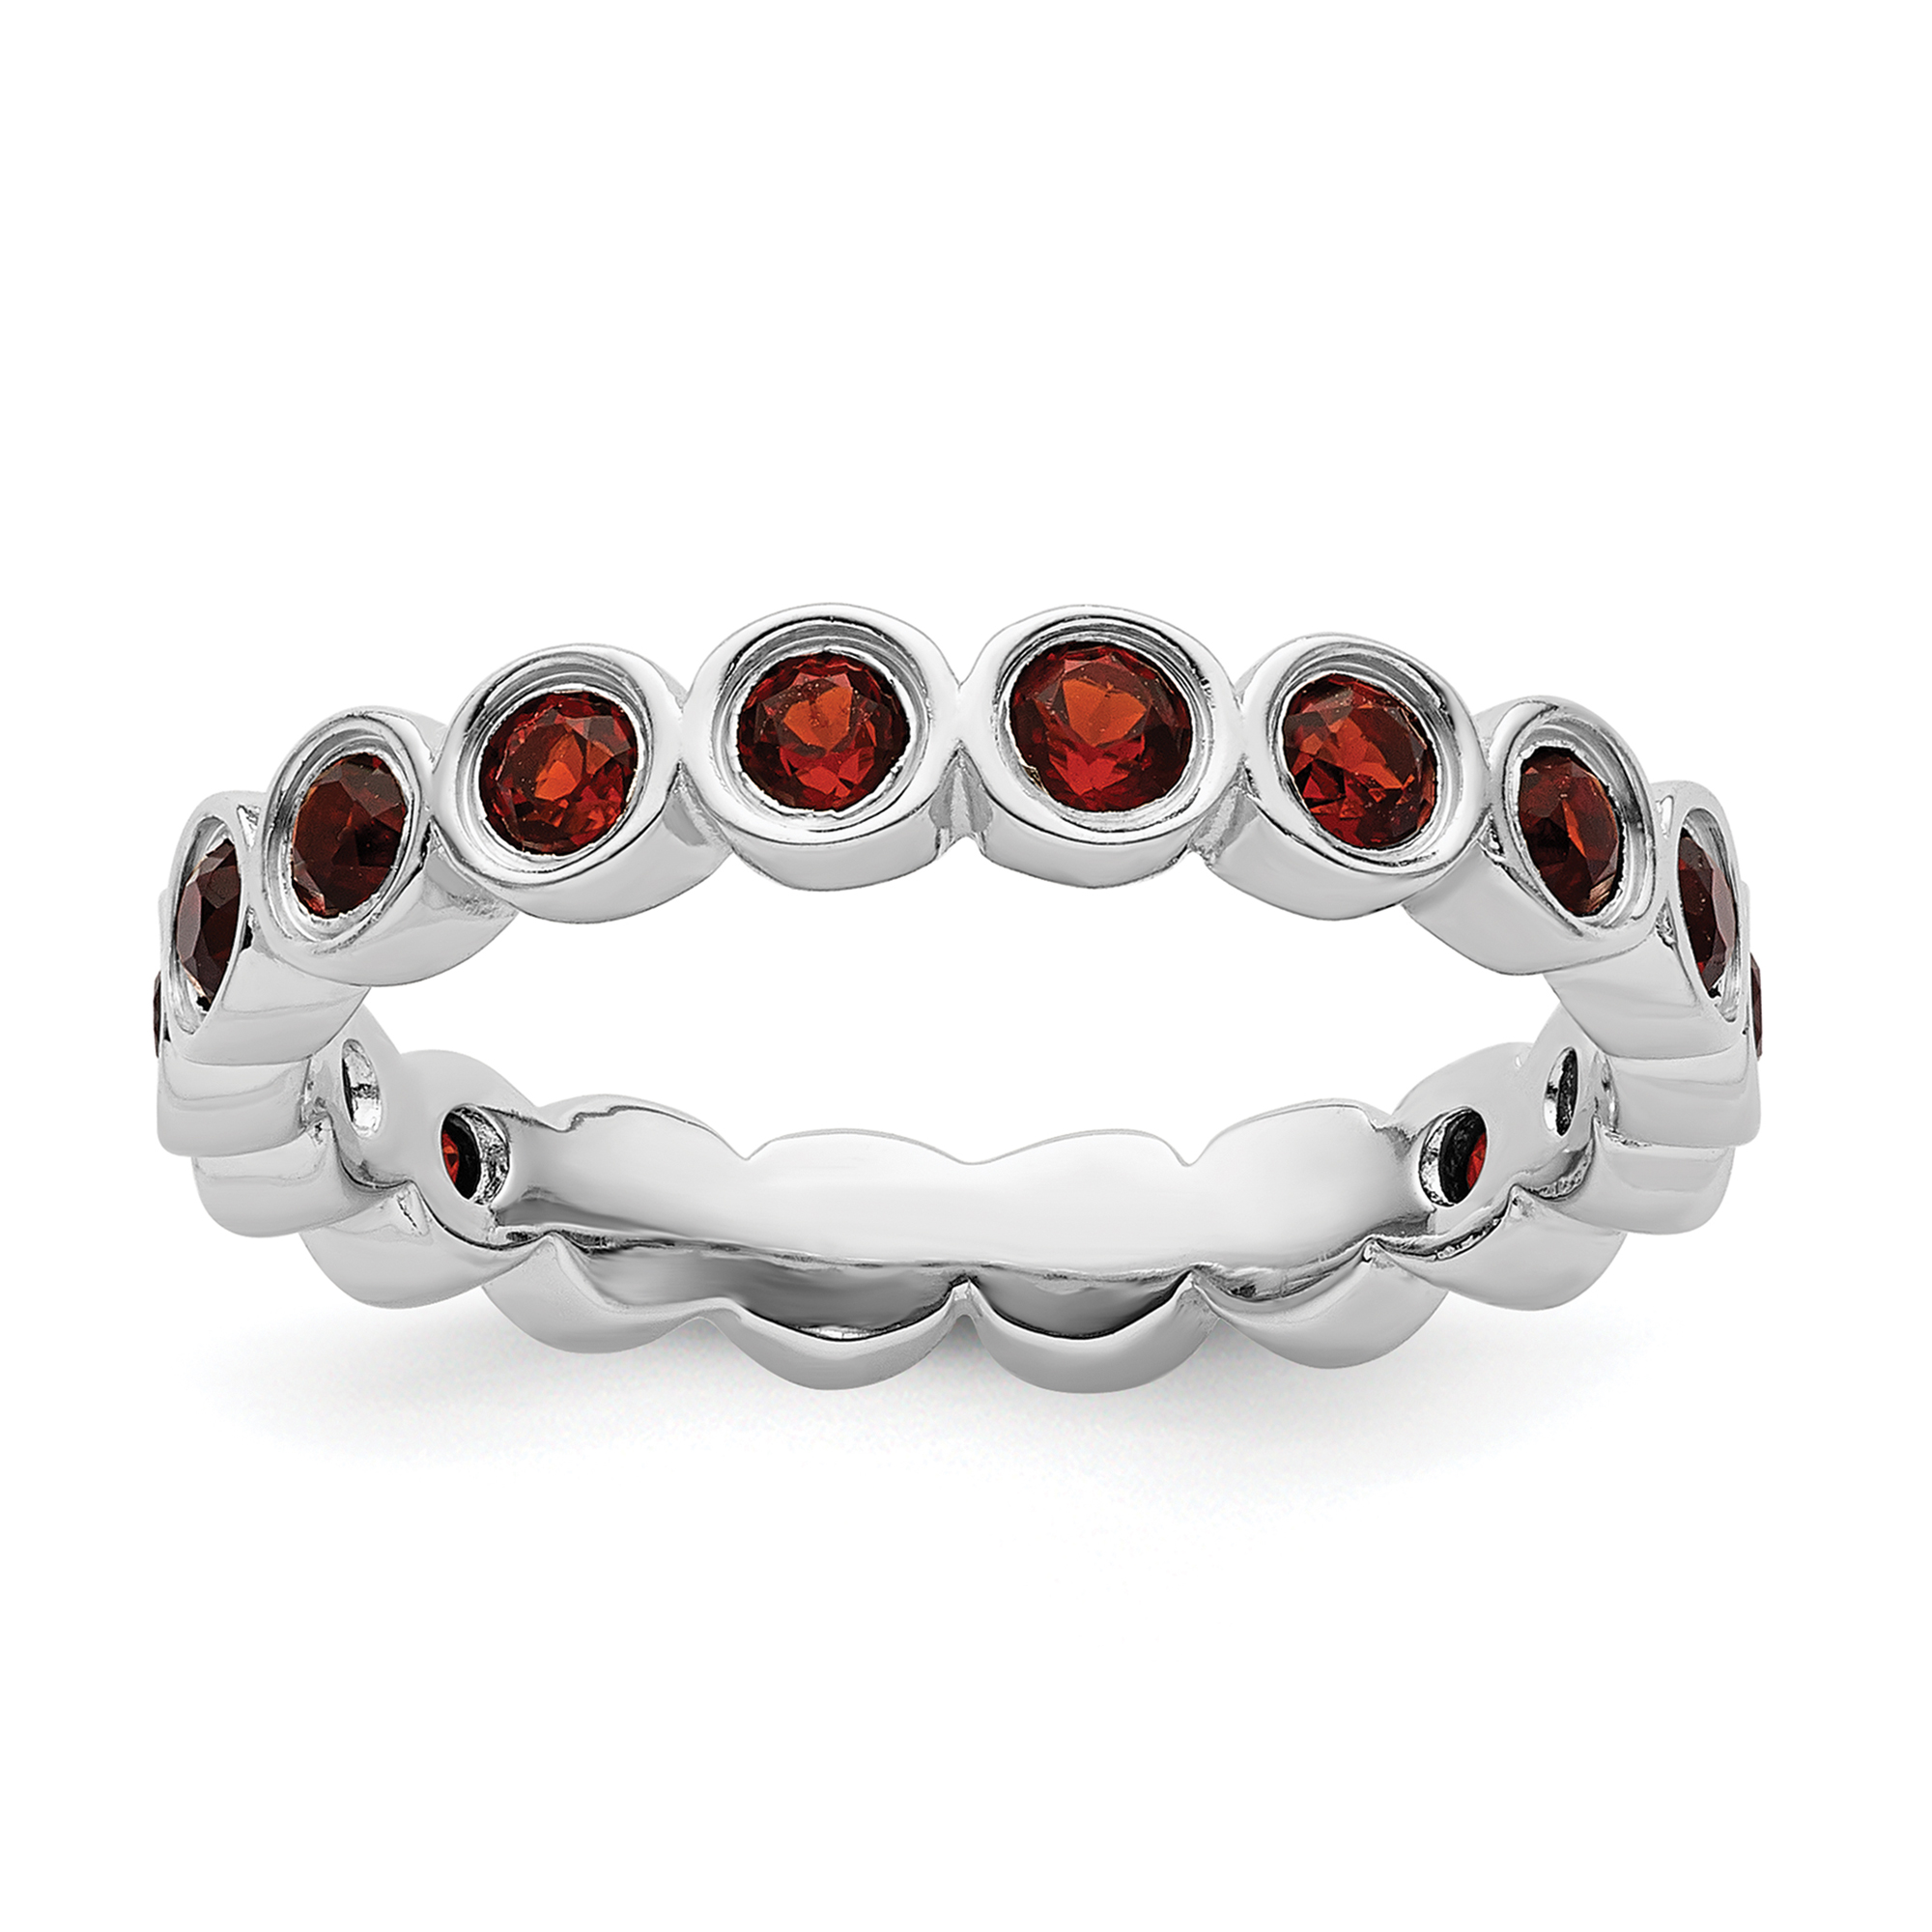 PANDORA Sleighing Santa Charm, Translucent Red Enamel | REEDS Jewelers